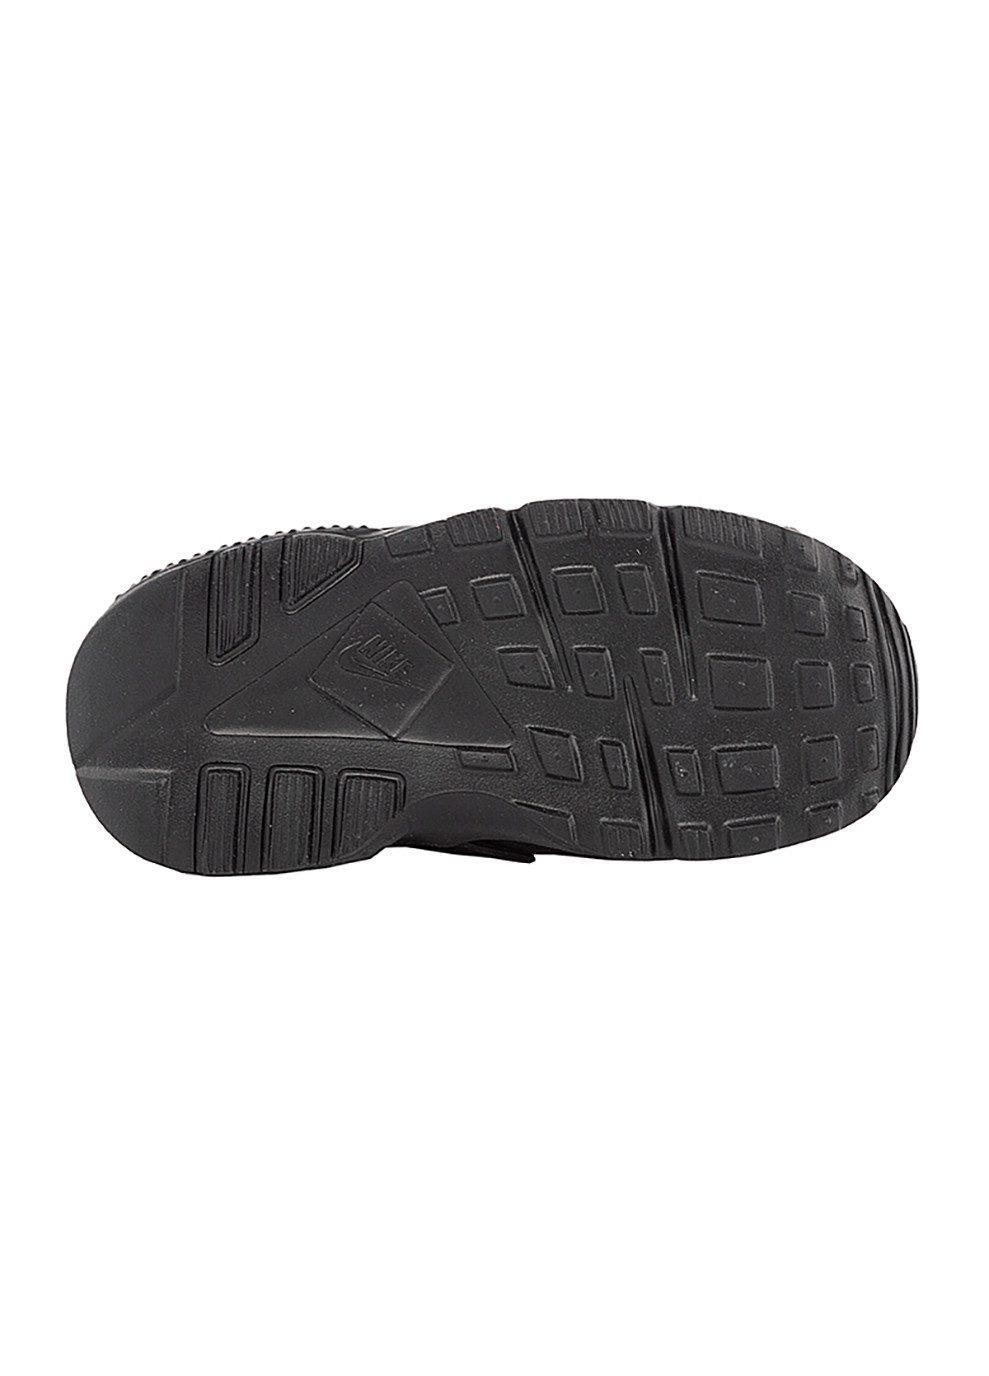 Черные демисезонные детские кроссовки huarache run (td) черный Nike